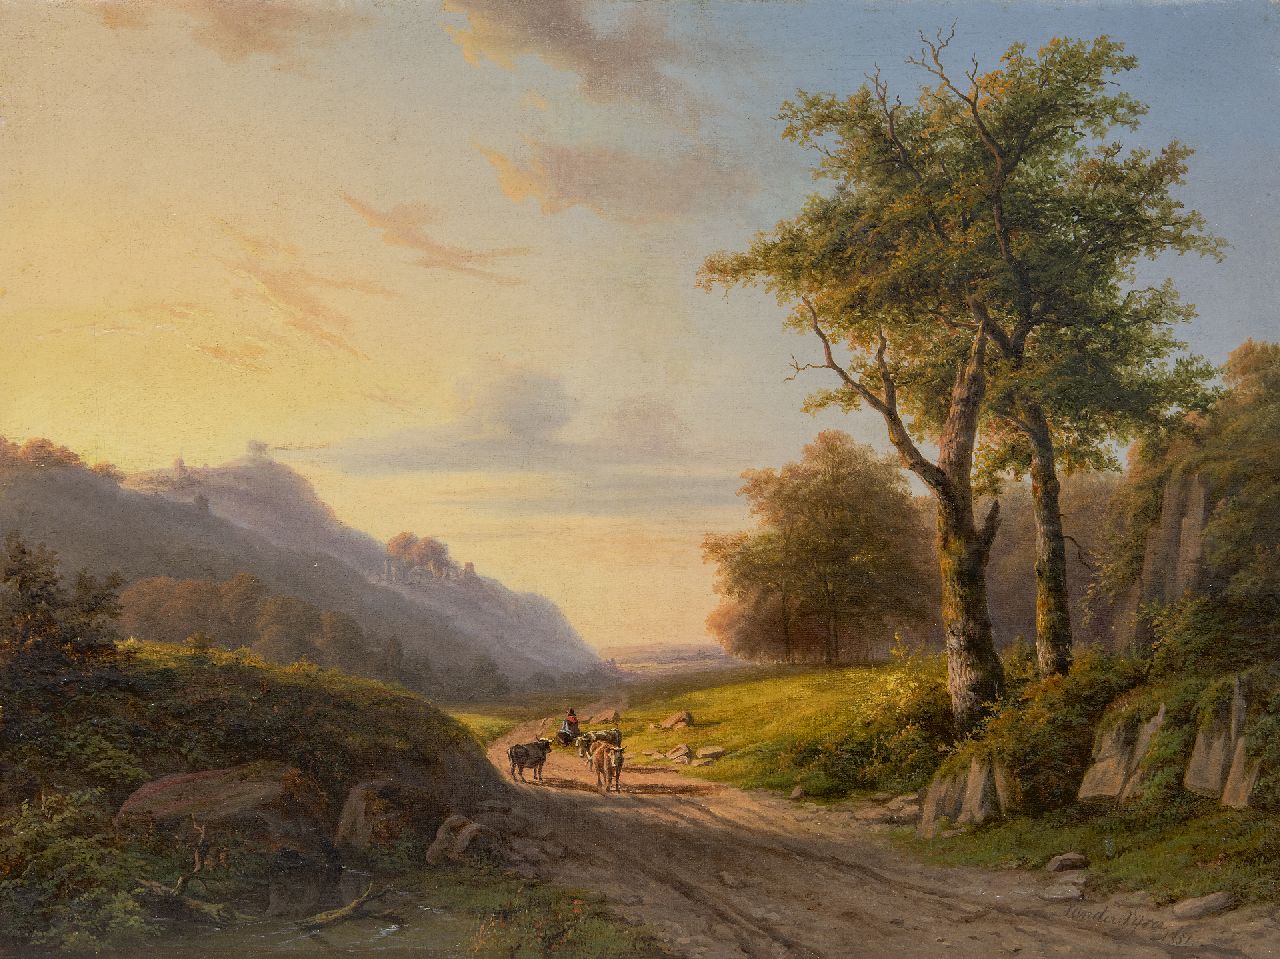 Vijver W.S.P. van der | Willem Simon Petrus van der Vijver | Schilderijen te koop aangeboden | Heuvellandschap met herder in de namiddag   (alleen tezamen met pendant), olieverf op doek 39,6 x 52,5 cm, gesigneerd rechtsonder en gedateerd 1851